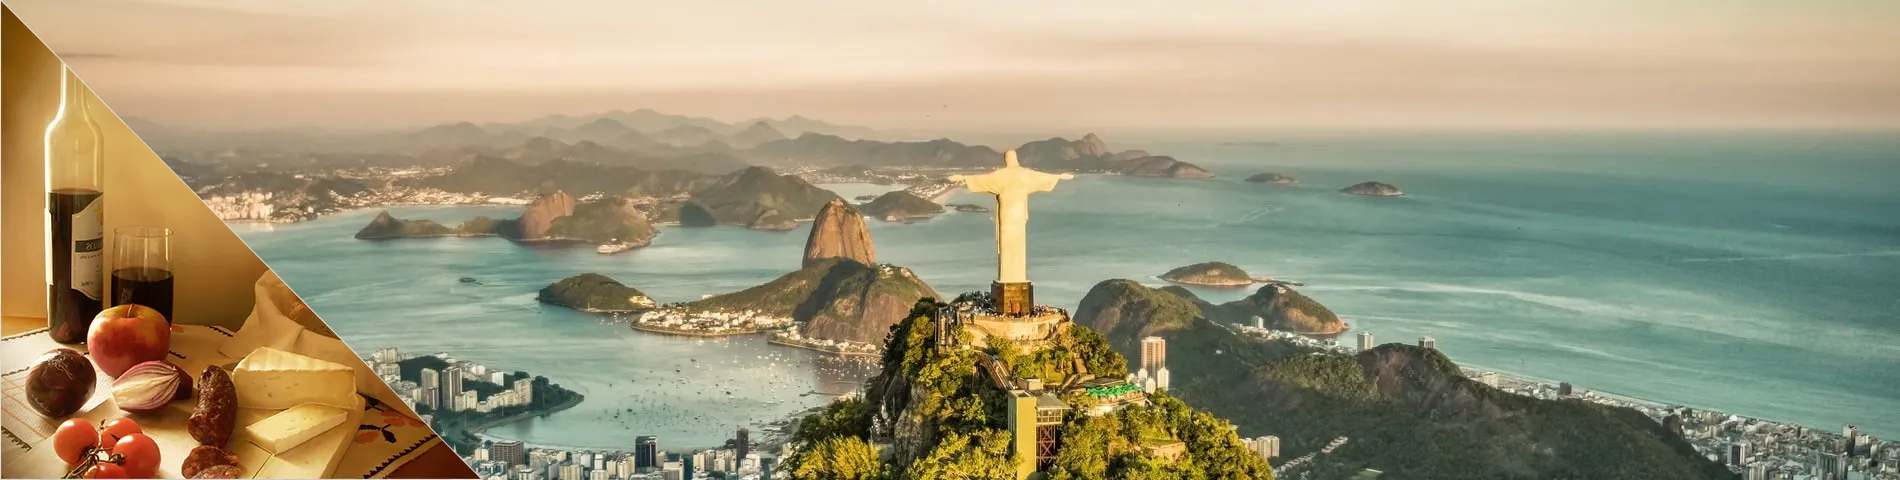 Rio de Janeiro - Portoghese & Cultura